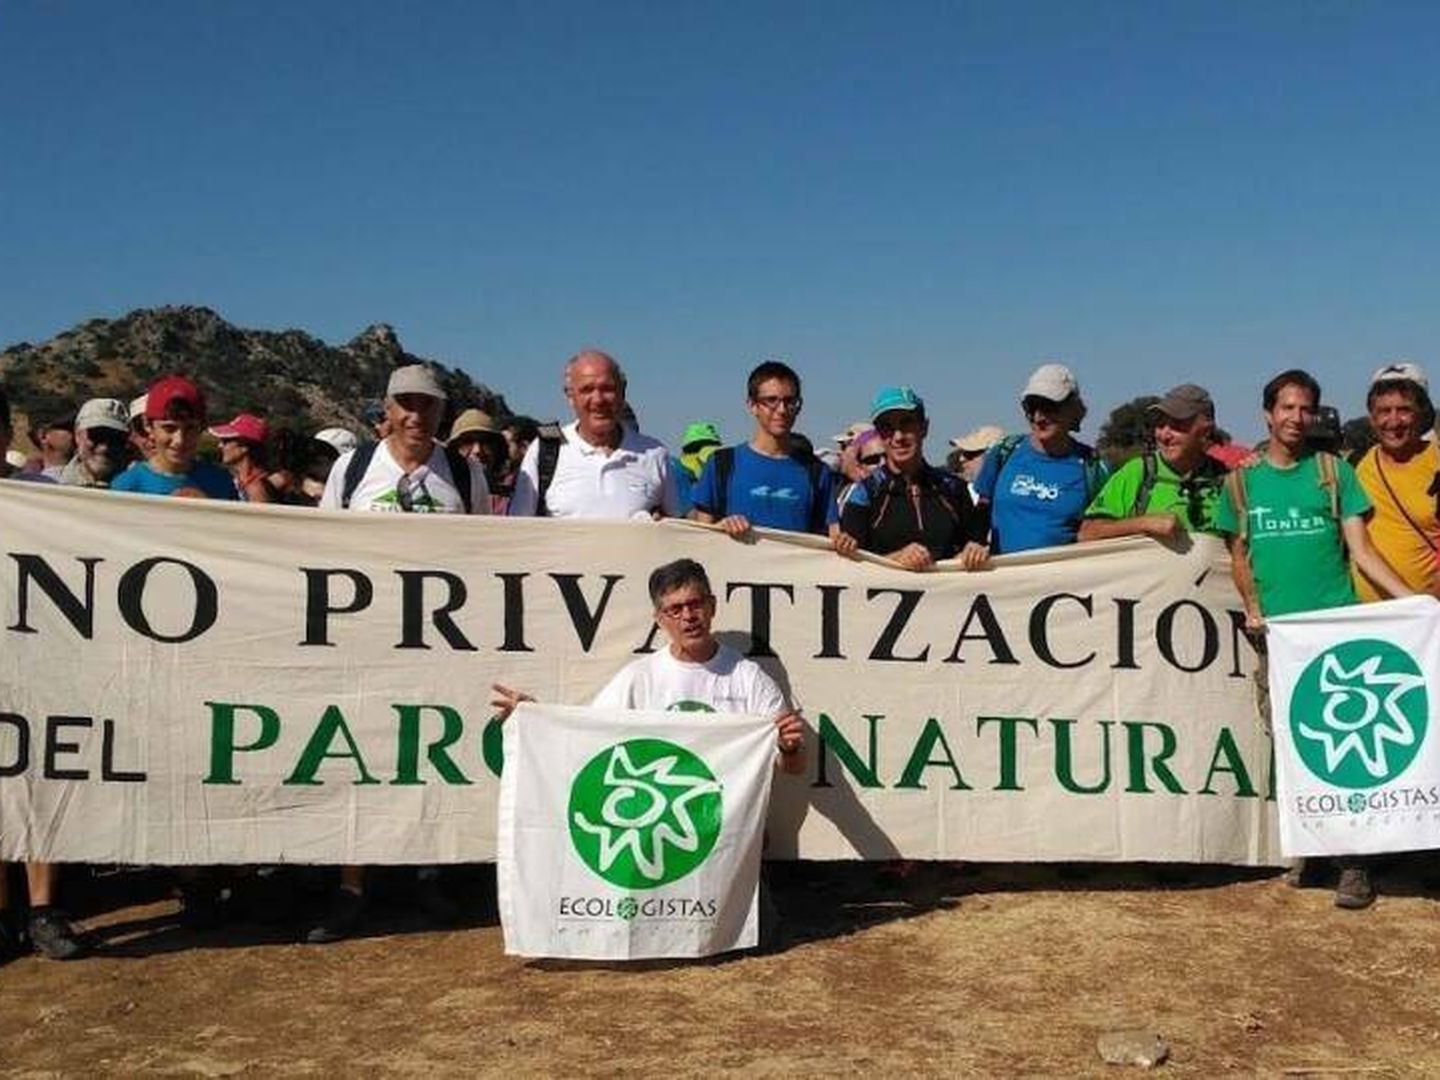 Juan Clavero, agachado en el centro, durante una protesta ecologista. (Ecologistas en Acción)